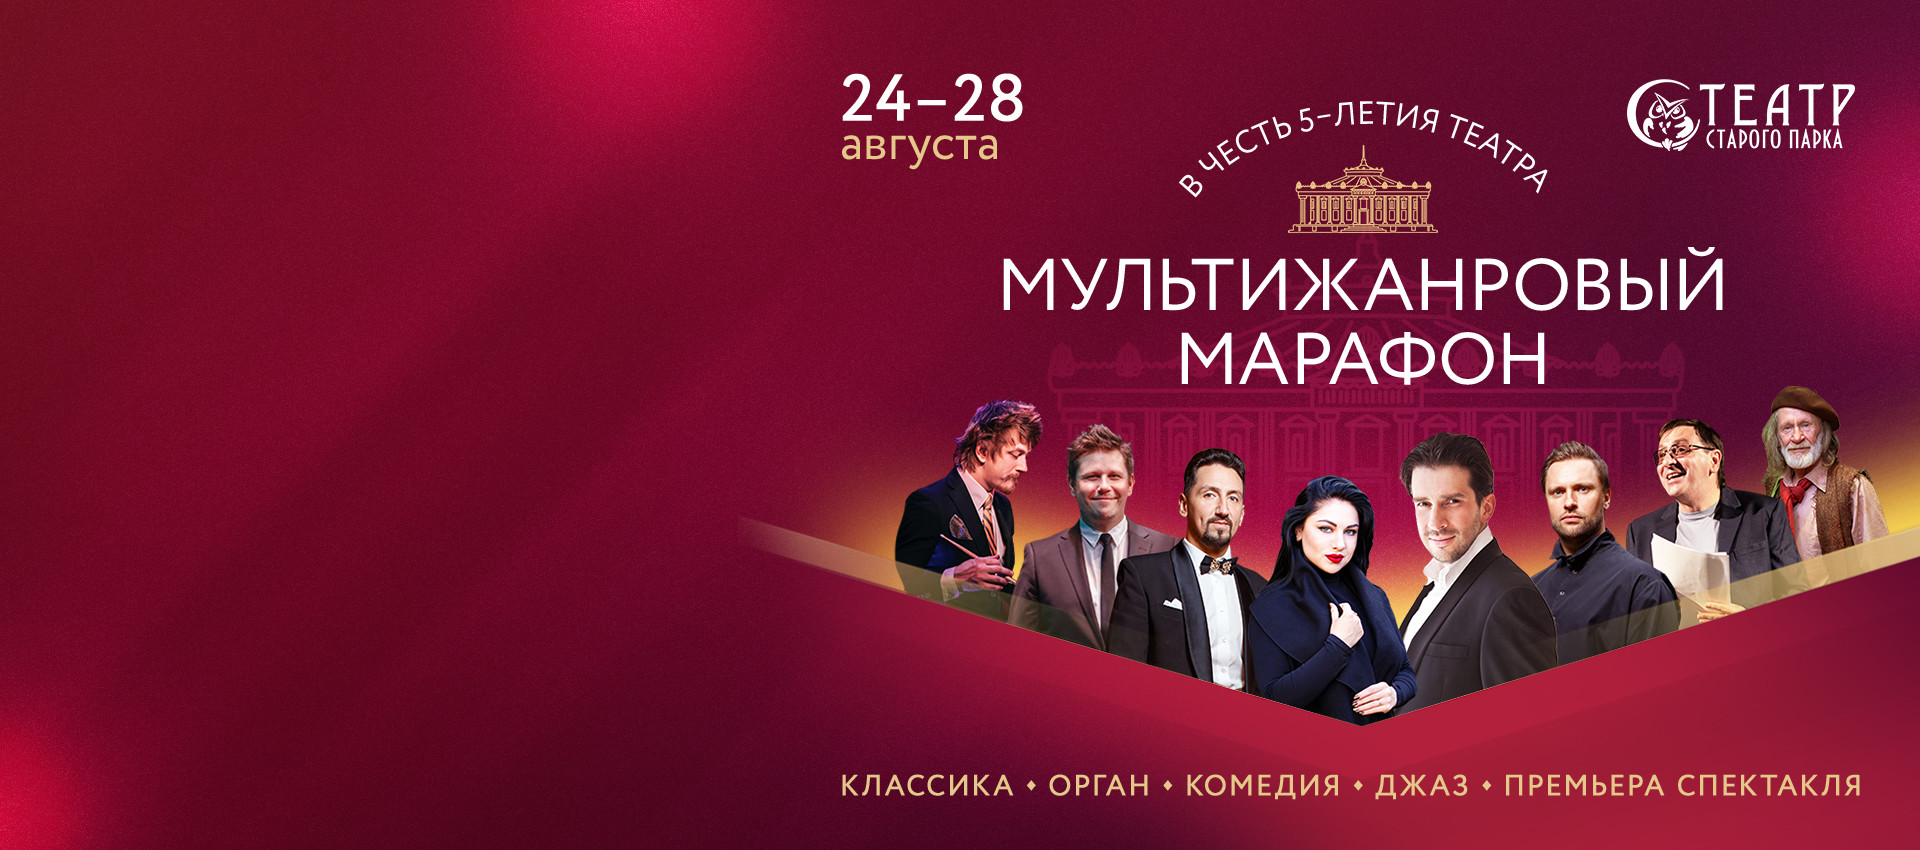 С 24 по 28 августа Праздничные  представленияв честь 5-летия театра